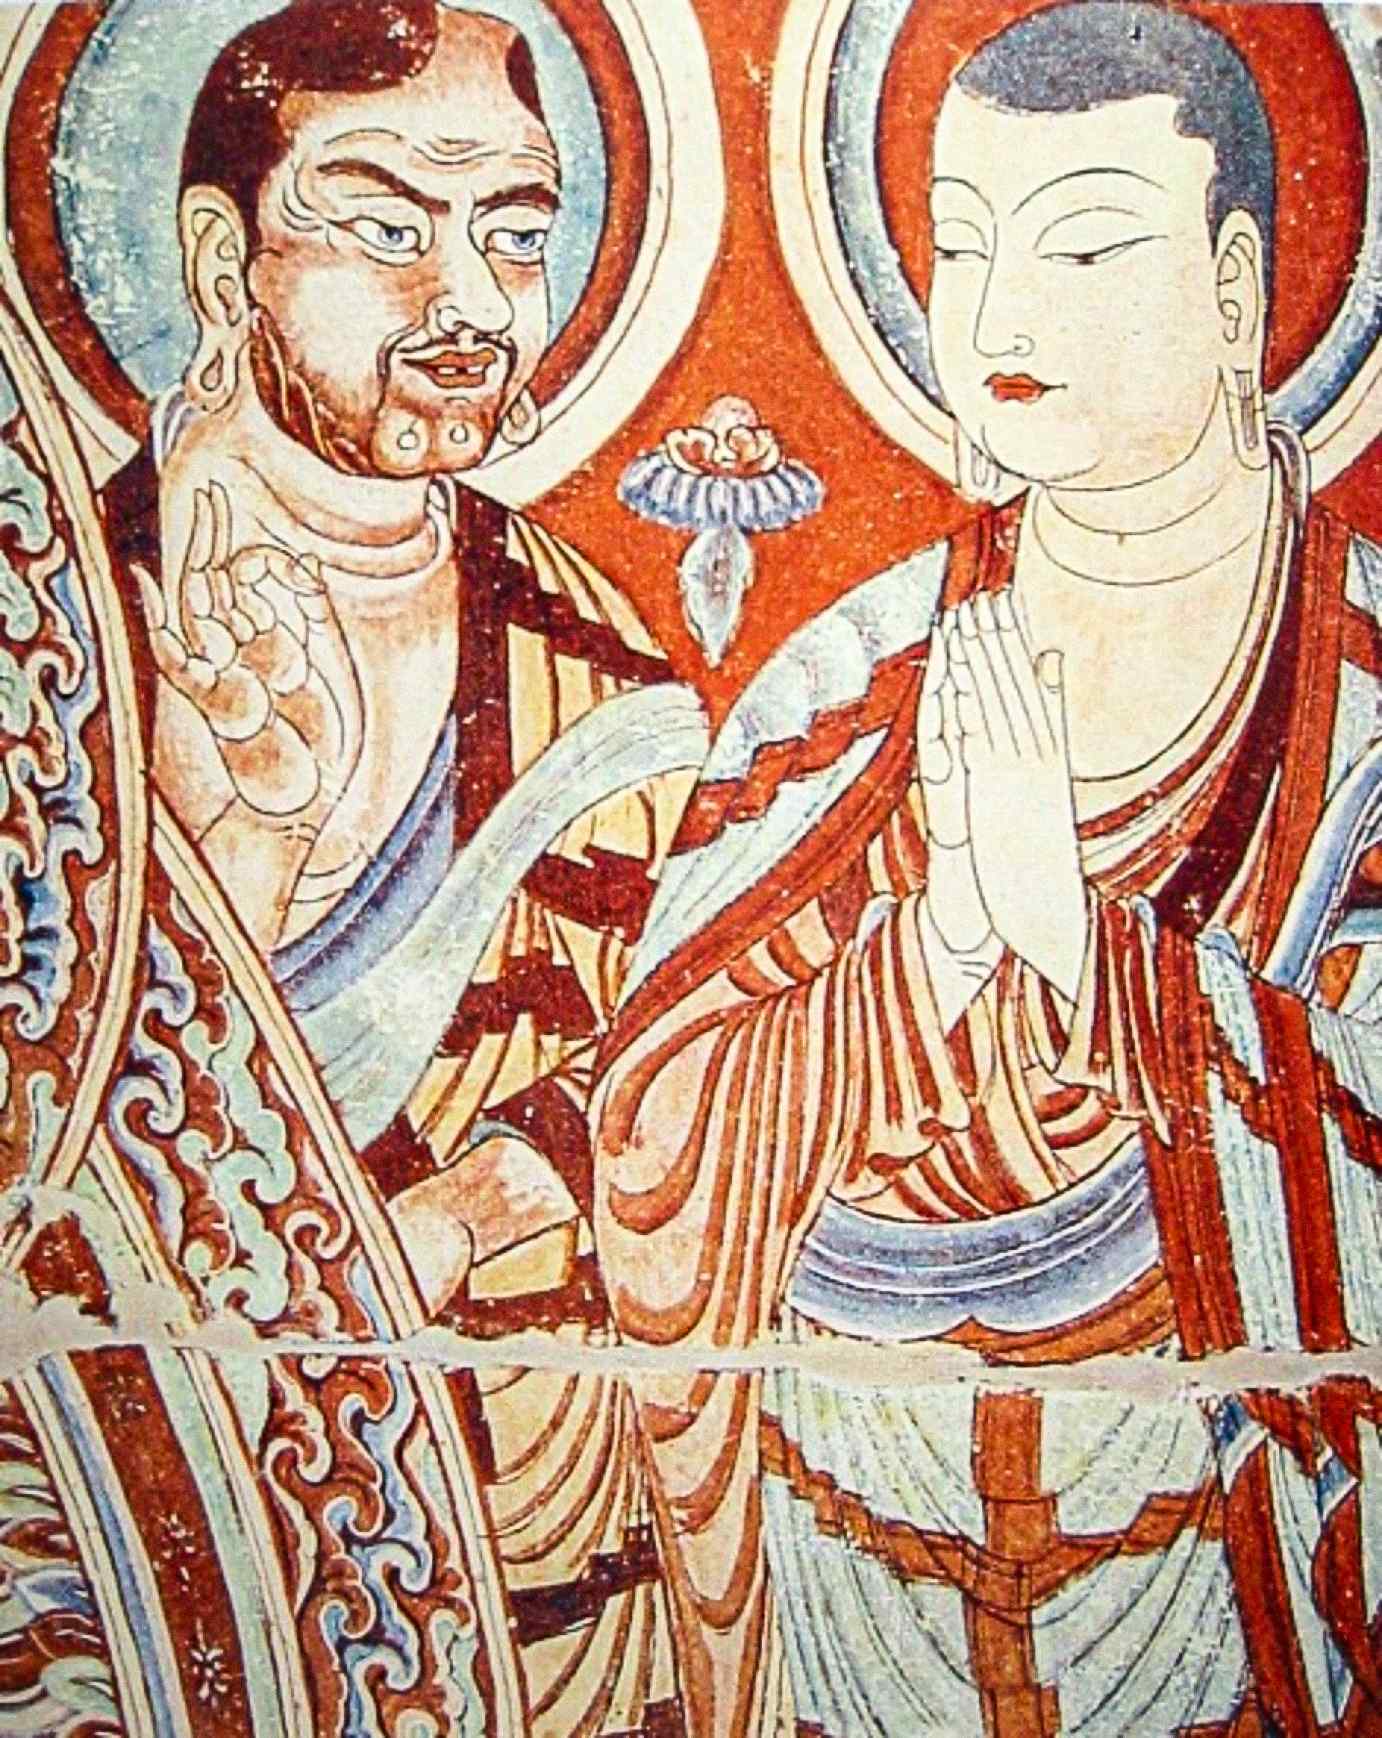 Një murg kaukazian i Azisë Qendrore, ndoshta një Sogdian ose Tocharian Indo-Evropian, që mëson një murg të Azisë Lindore, ndoshta një ujgur ose kinez turk, në një afresk të shekullit të 9-të pas Krishtit nga Shpellat e Mijëra Budës Bezeklik pranë Turfan, Xinjiang, Kinë.